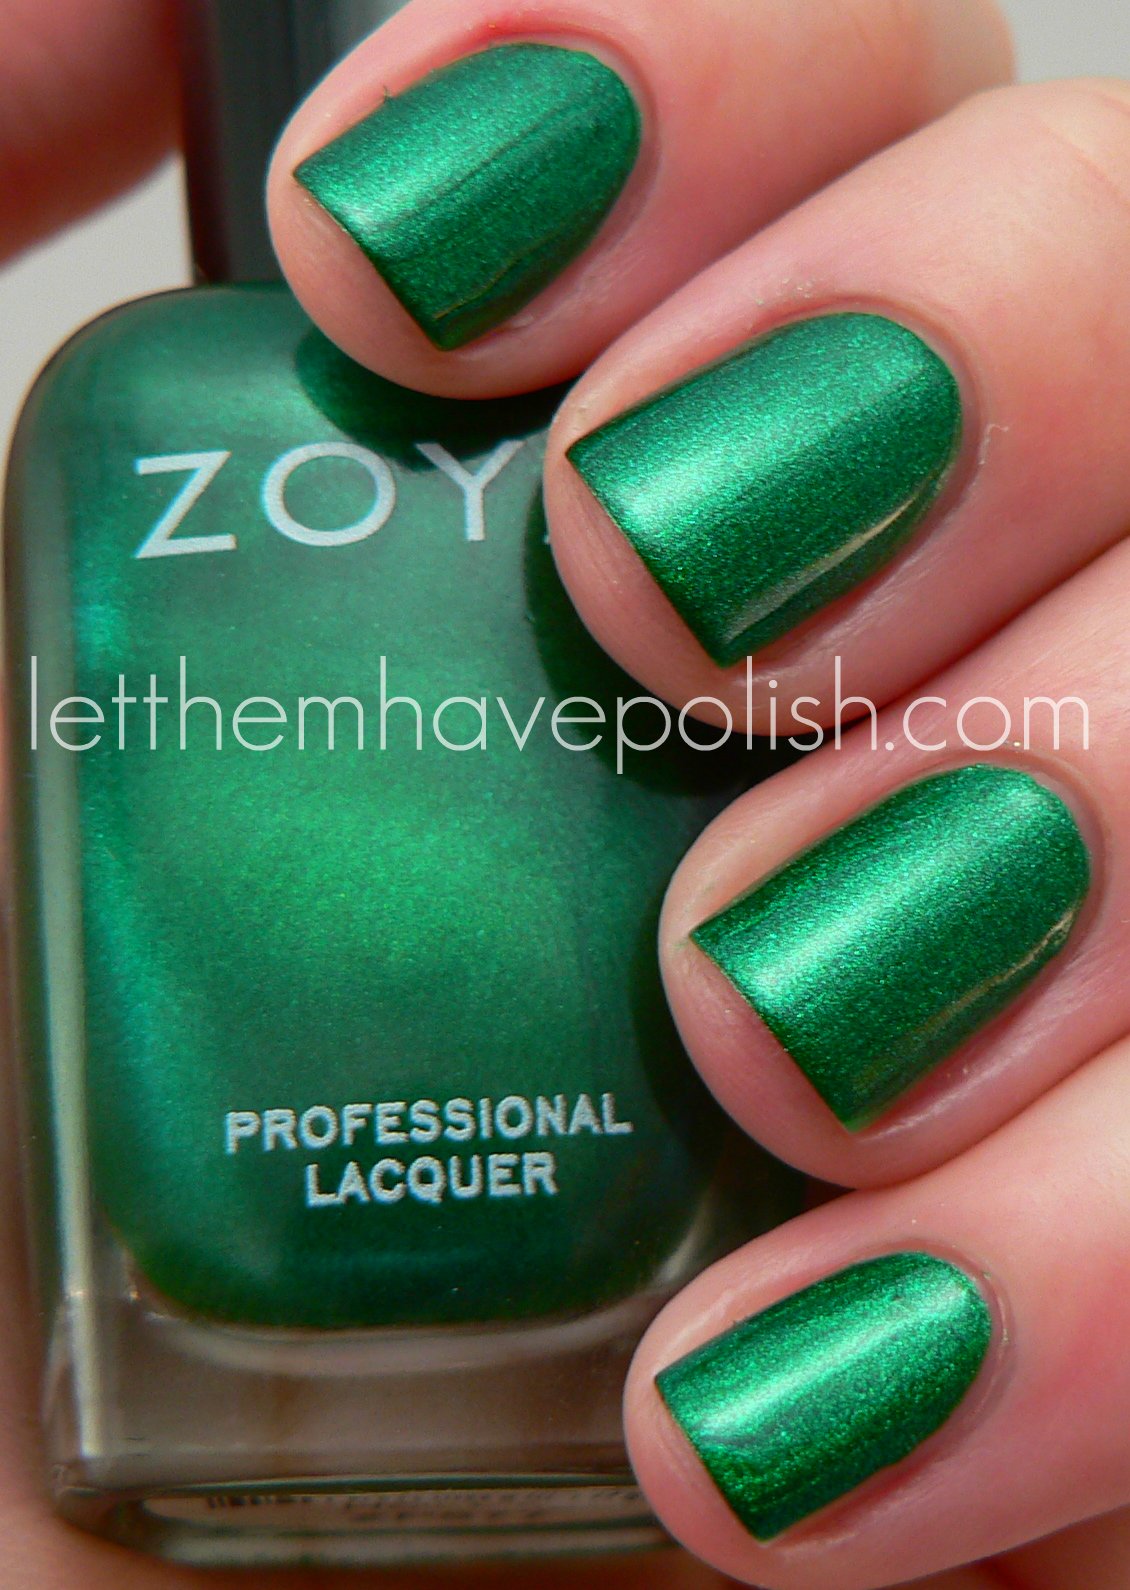 Let them have Polish!: Zoya Zoya Zoya! Sunday Spam for your Eye- Holes!